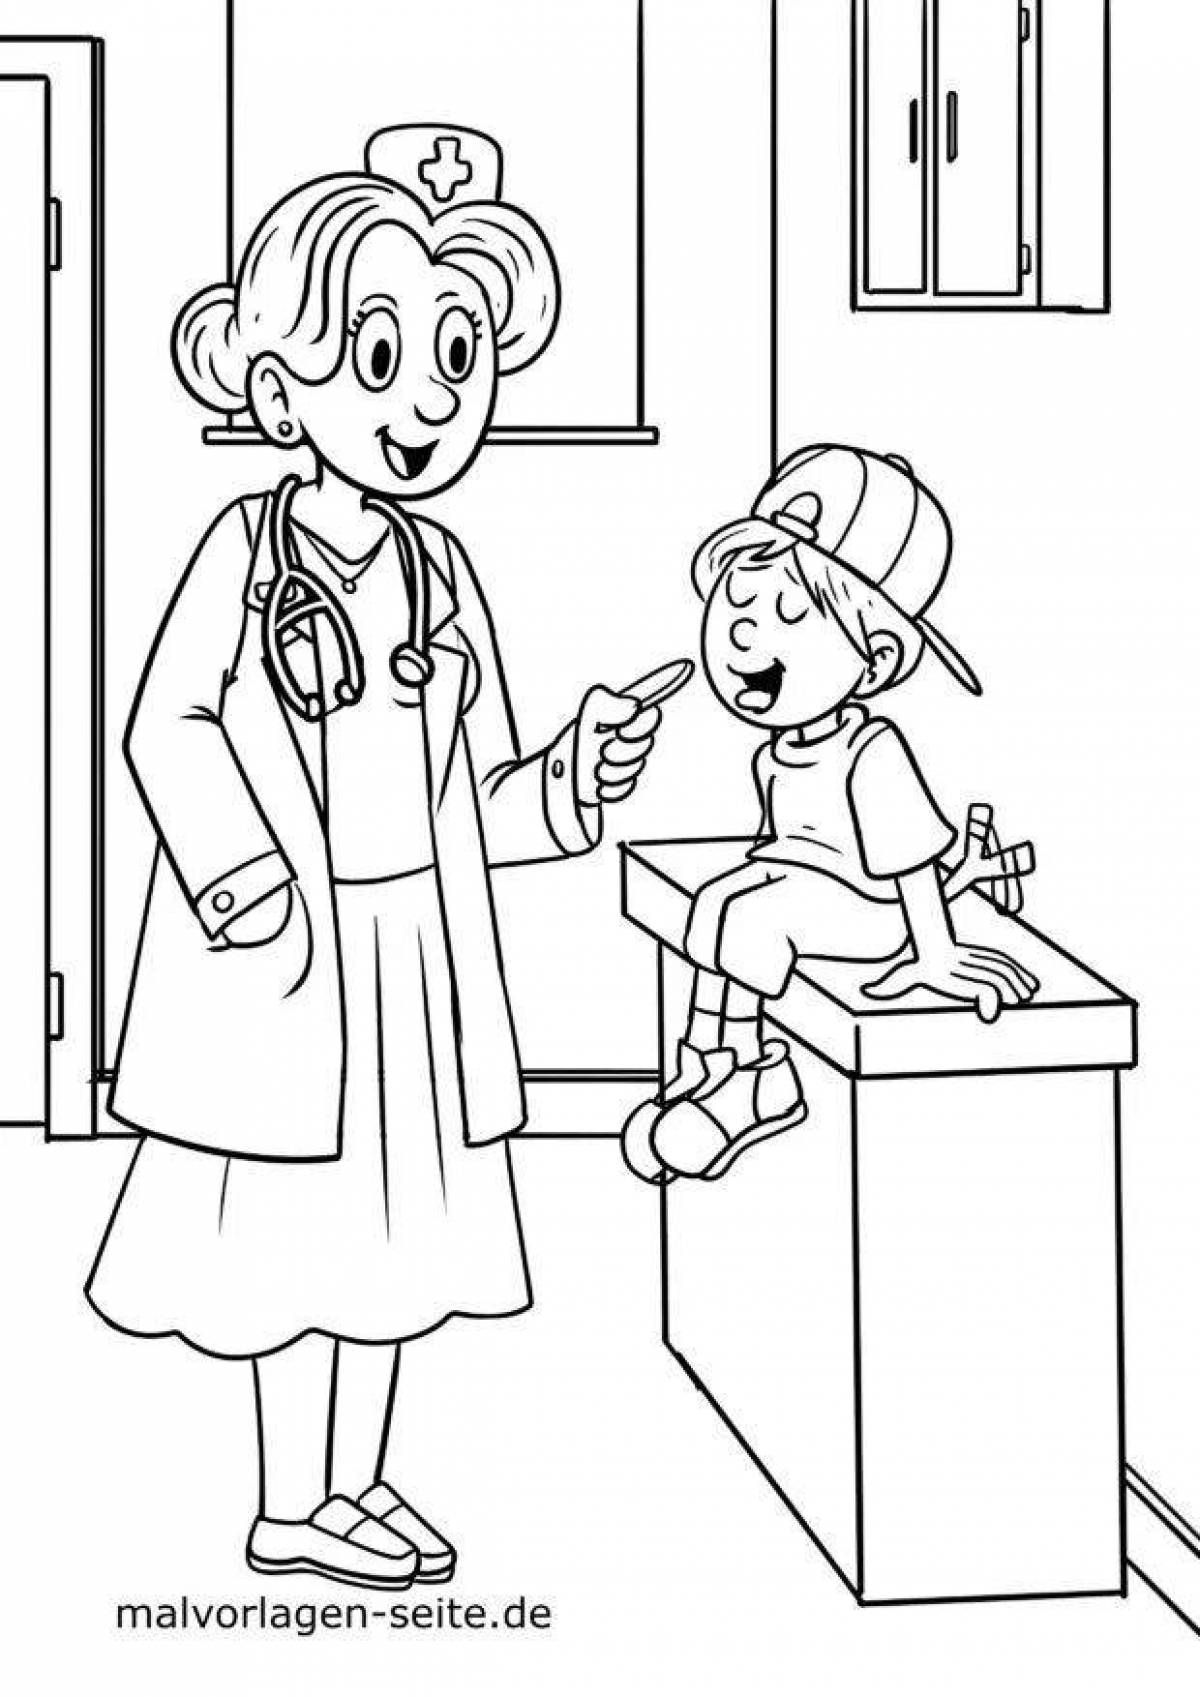 Раскраска профессия врач для детей